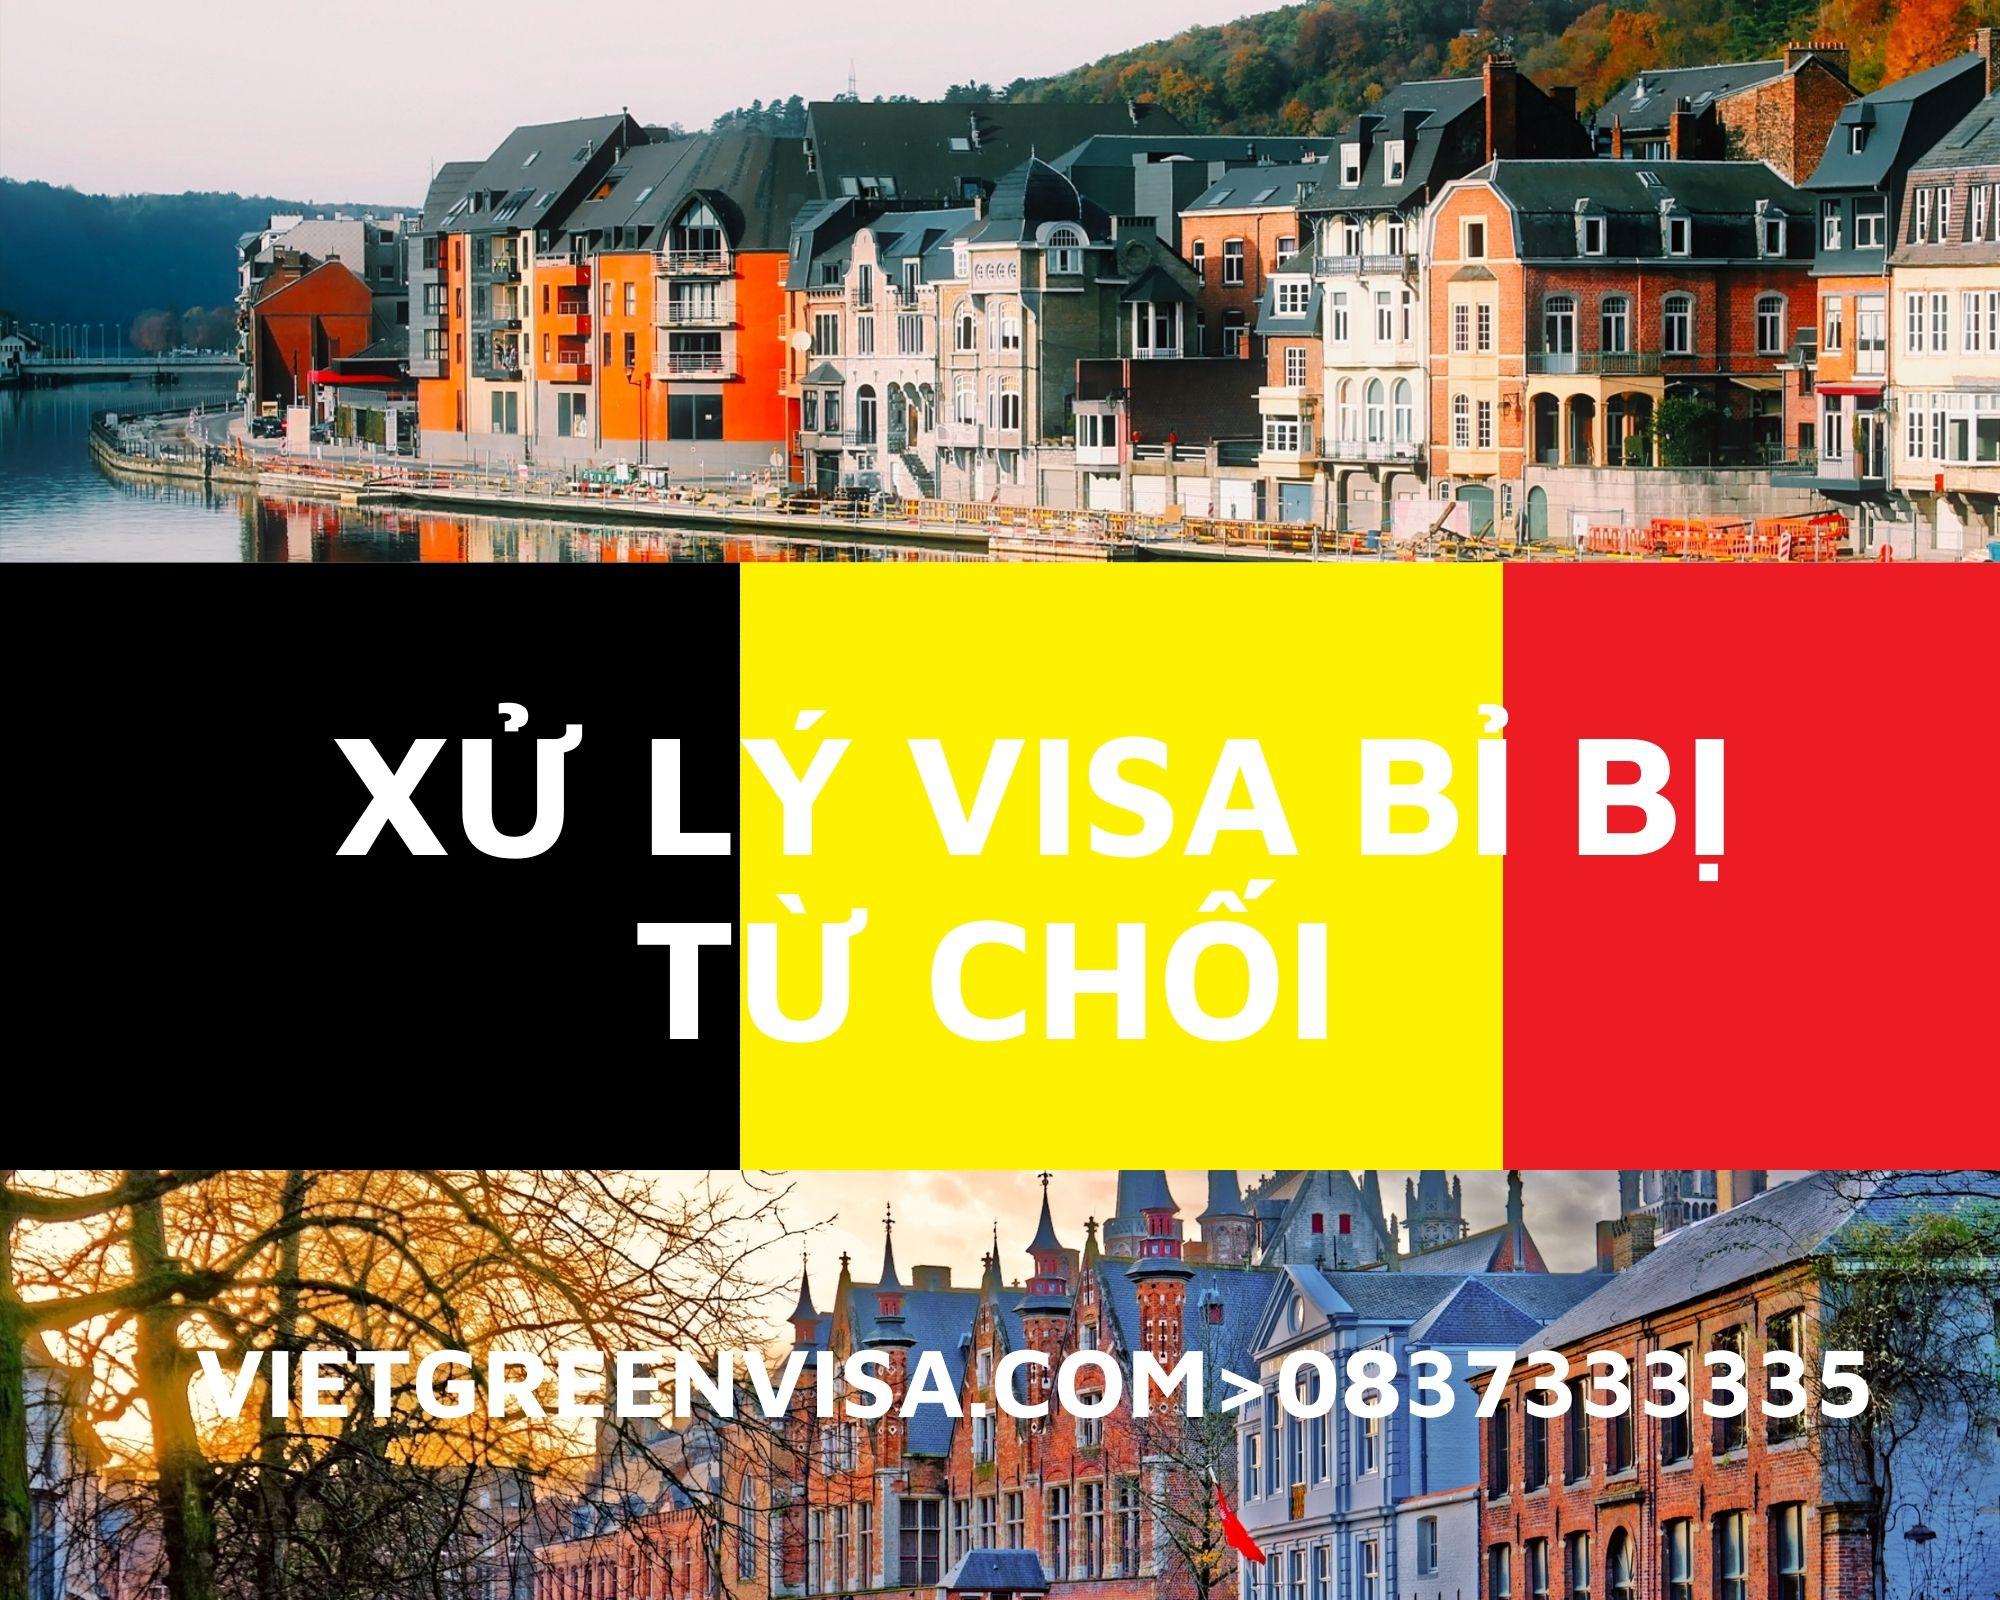 Xử lý visa Bỉ bị từ chốI nhanh chóng